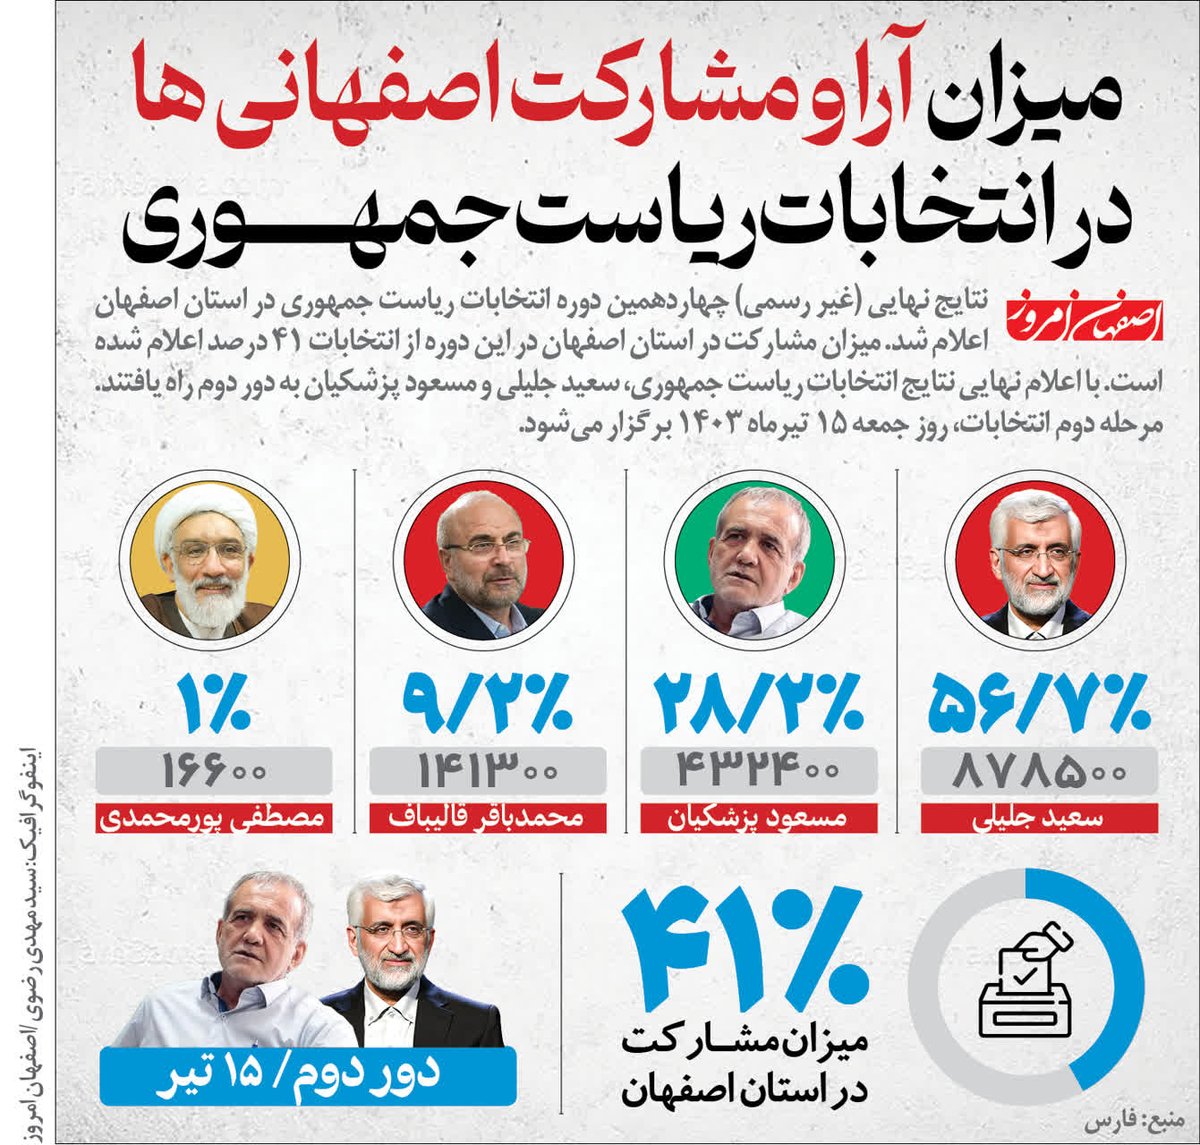 مردم این استان باز هم در انتخابات شگفتی آفریدند